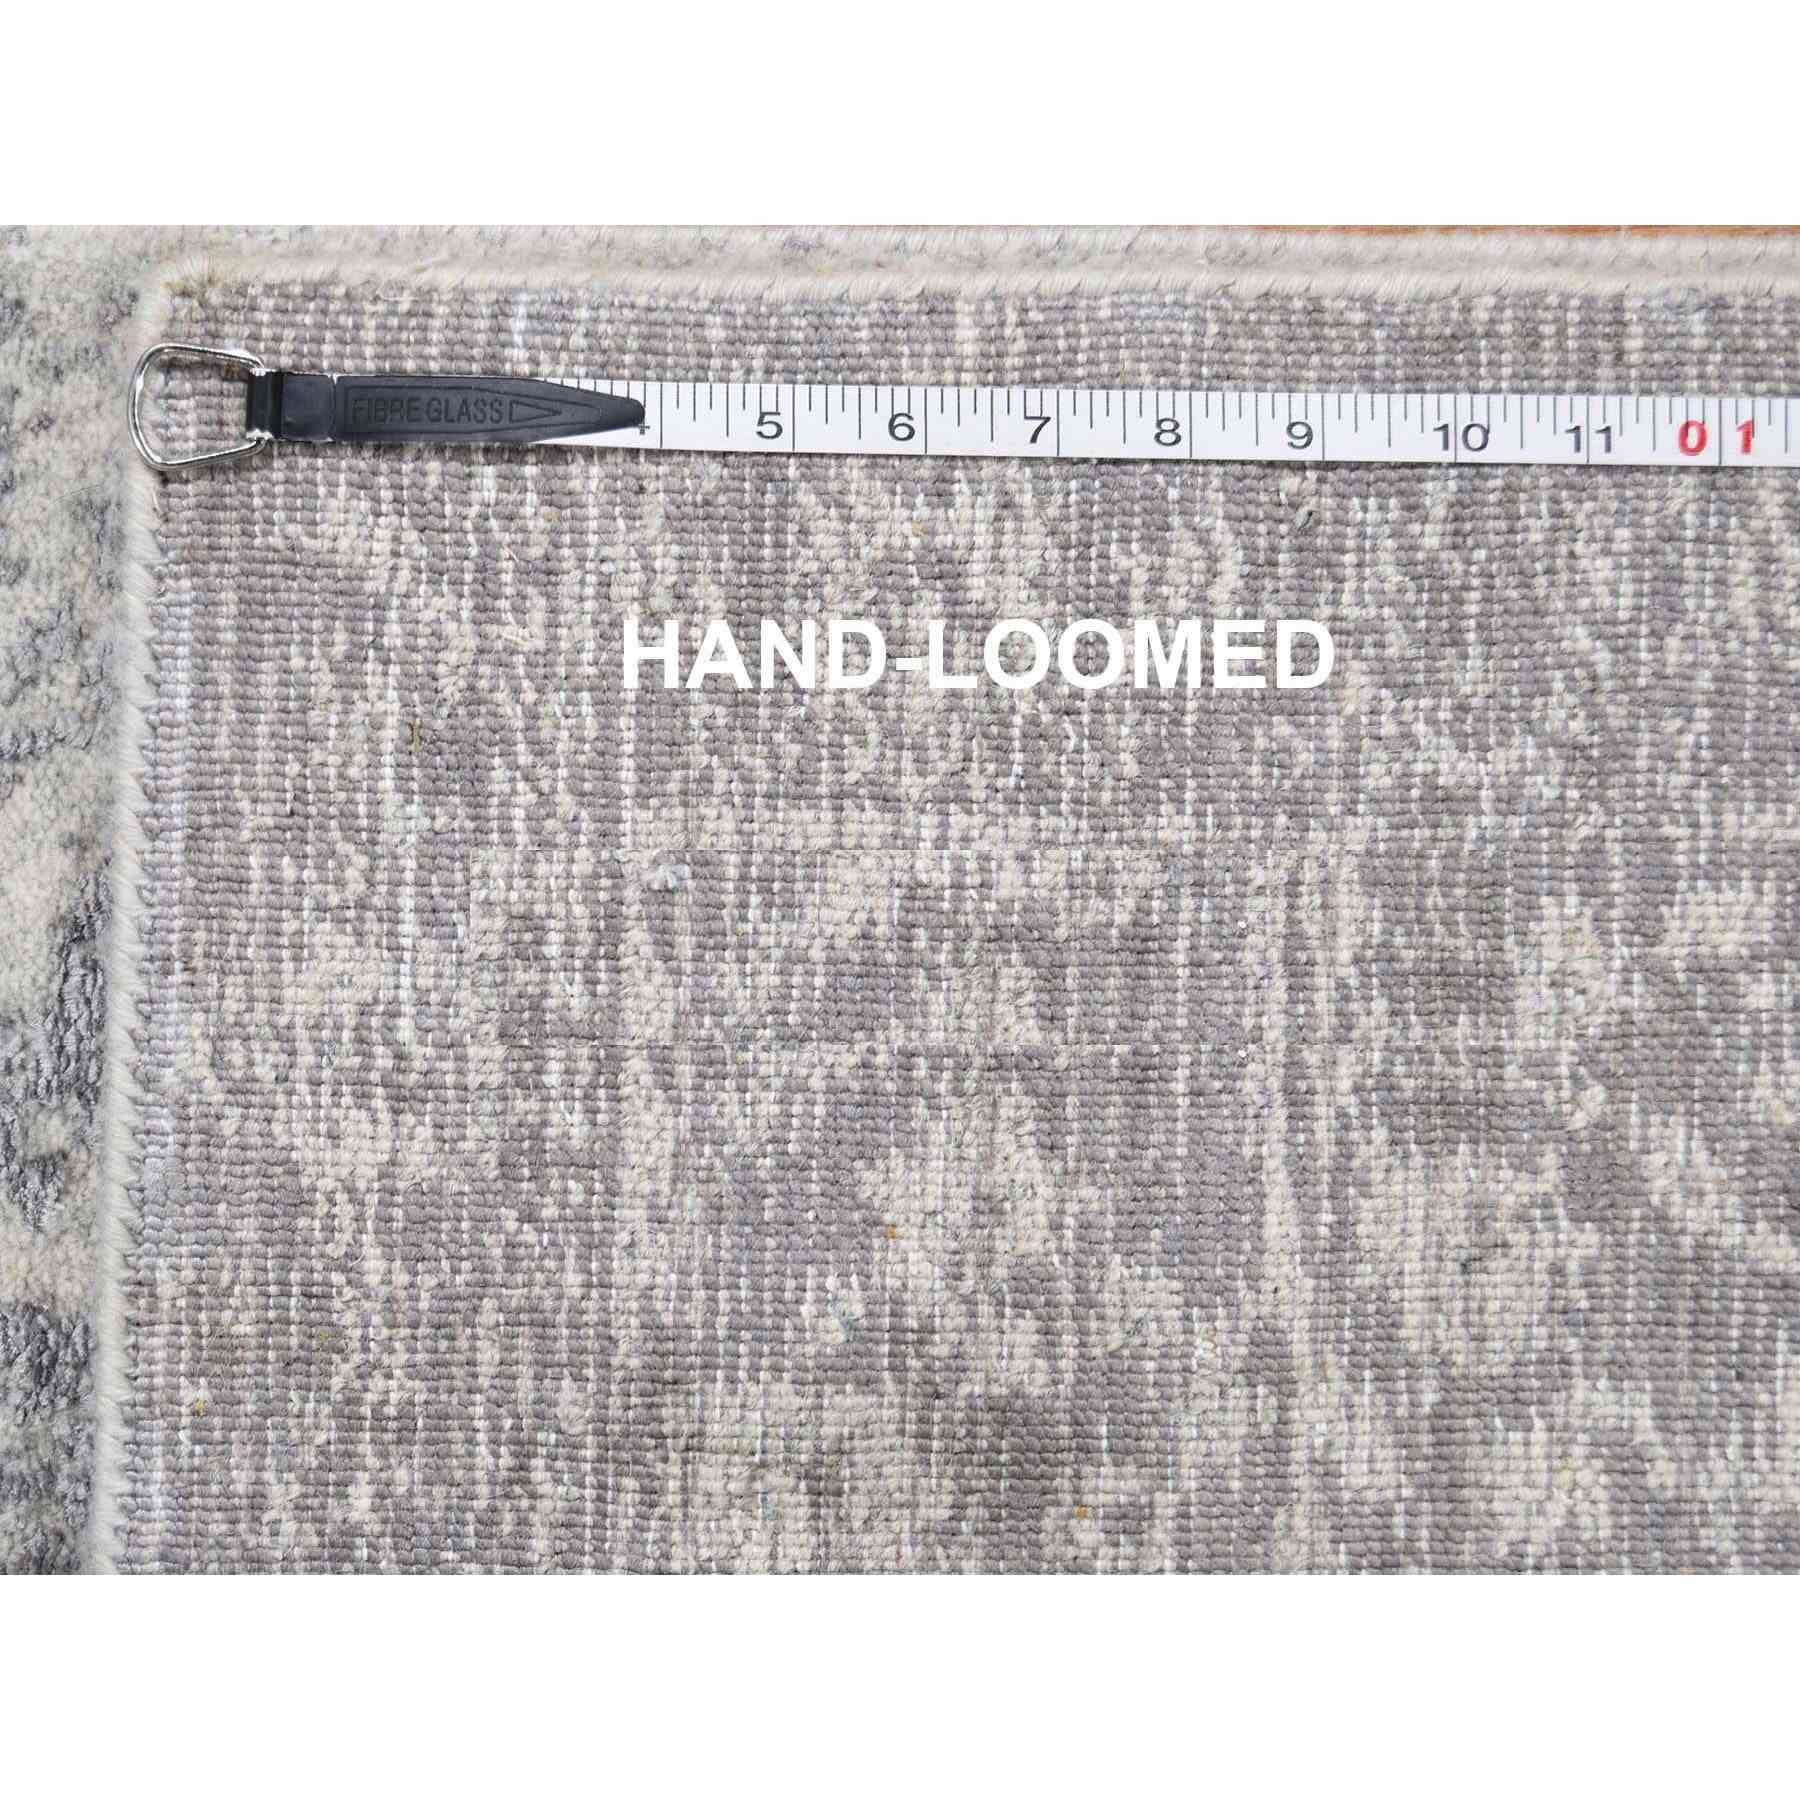 Hand-Loomed-Hand-Loomed-Rug-297845